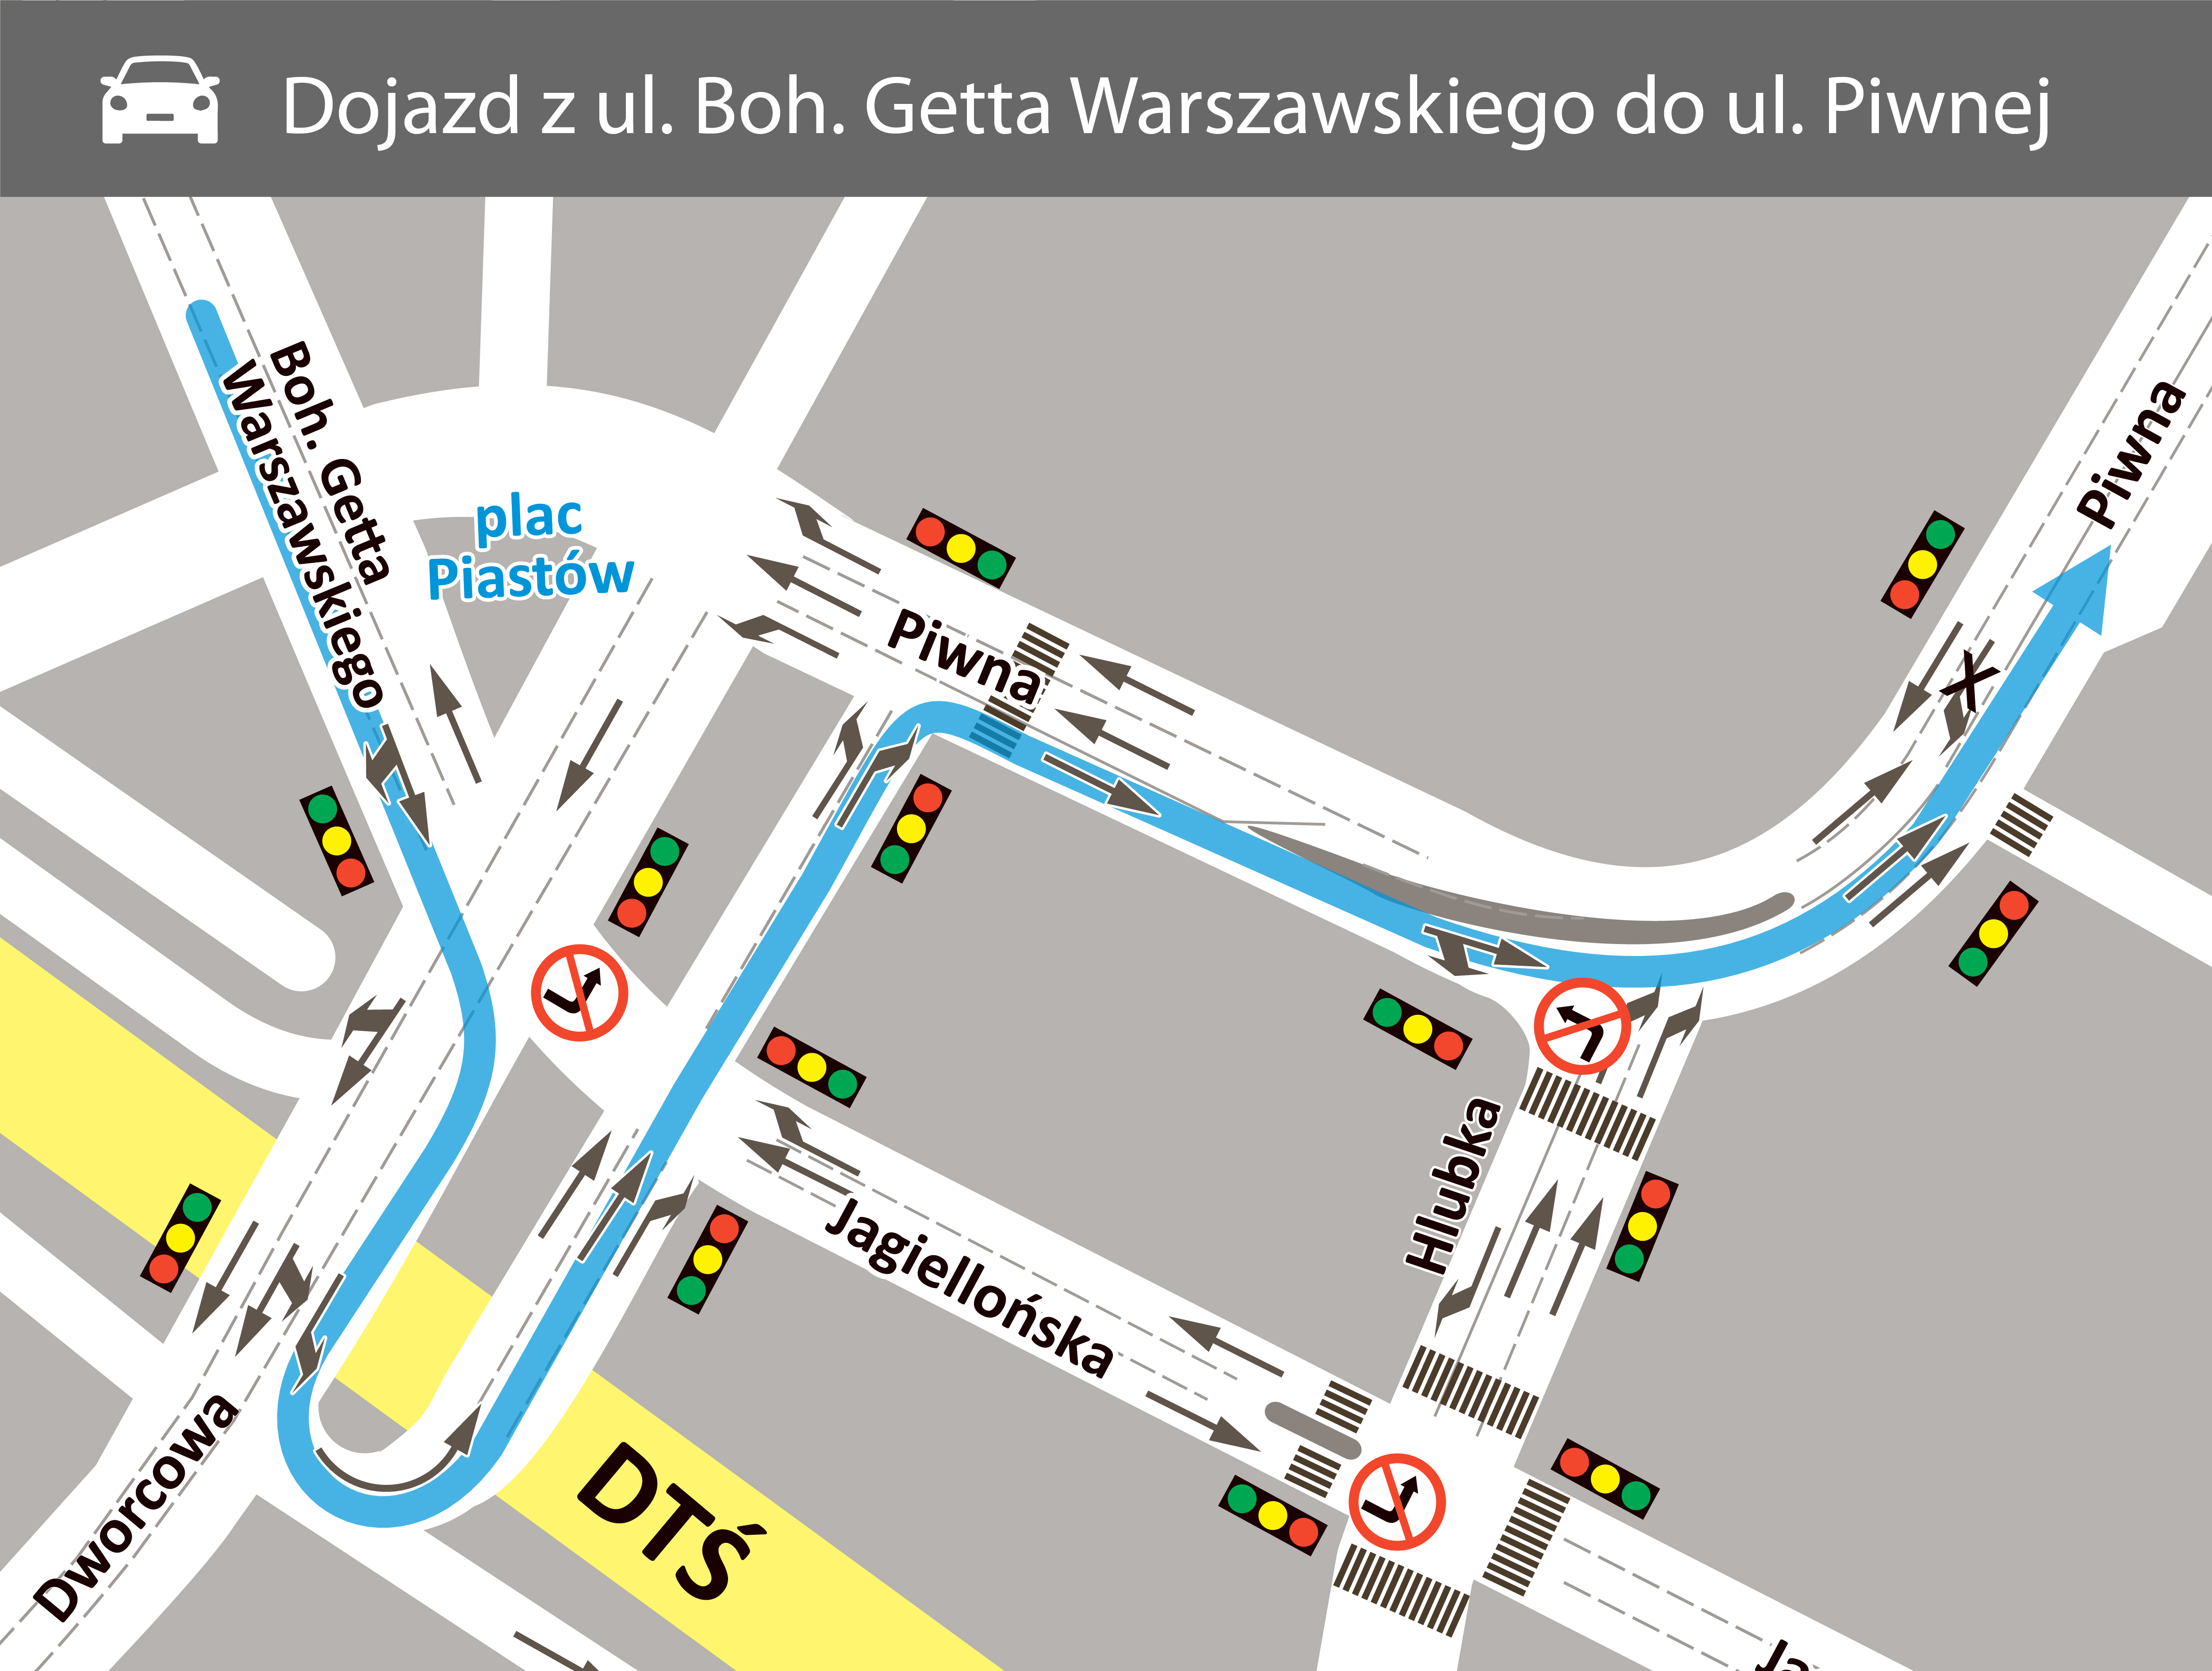 Dojazd z ulicy Bohaterów Getta Warszawskiego do Piwnej